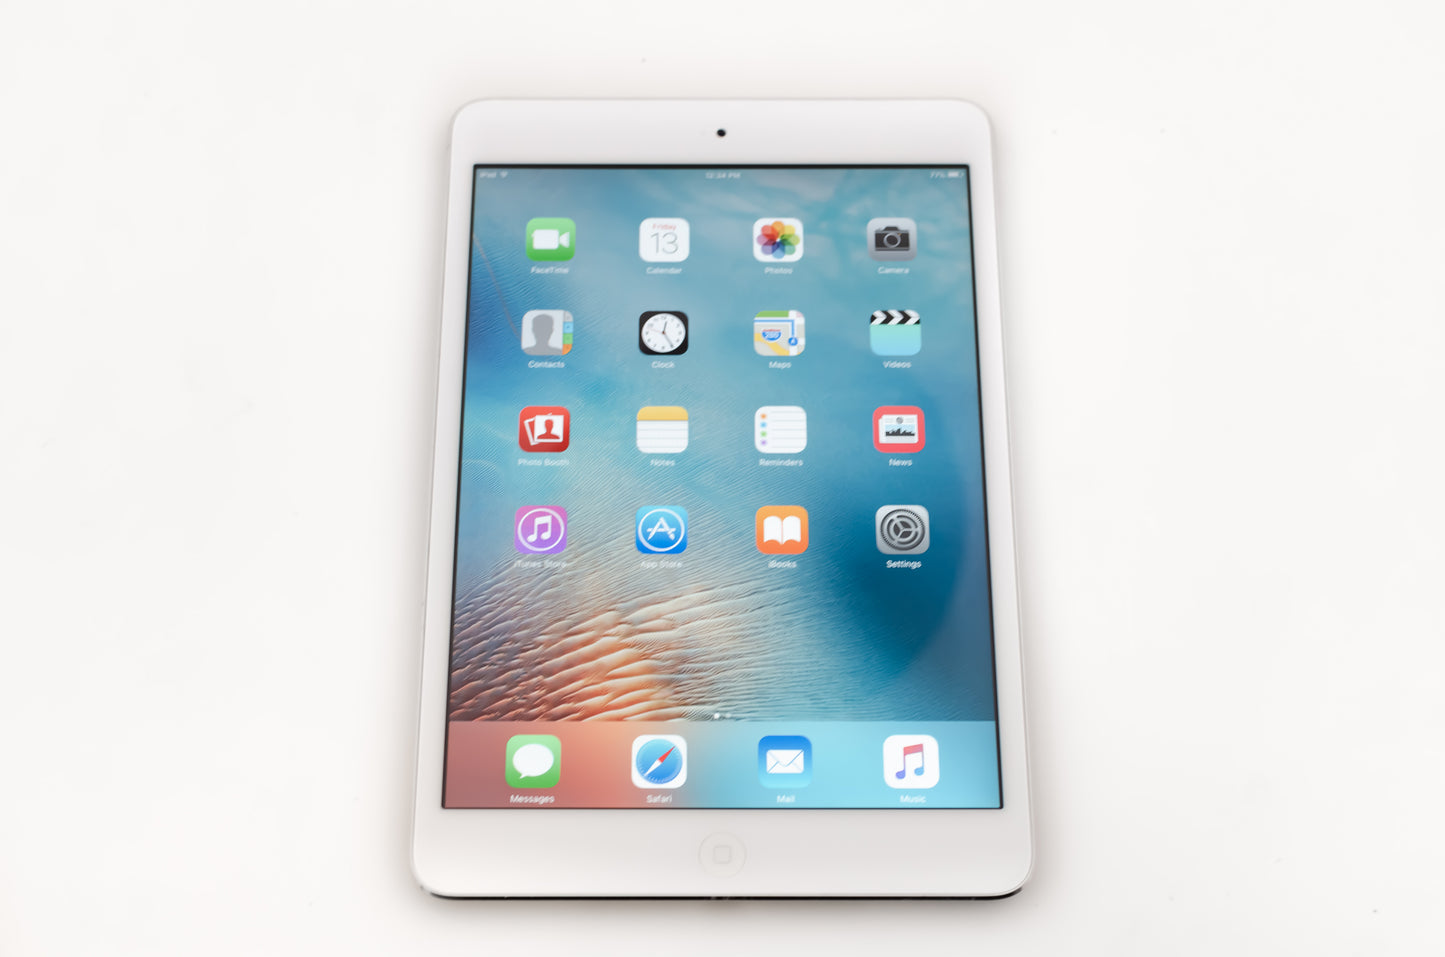 apple-2012-7.9-inch-ipad-mini-1-a1432-silver/white-1